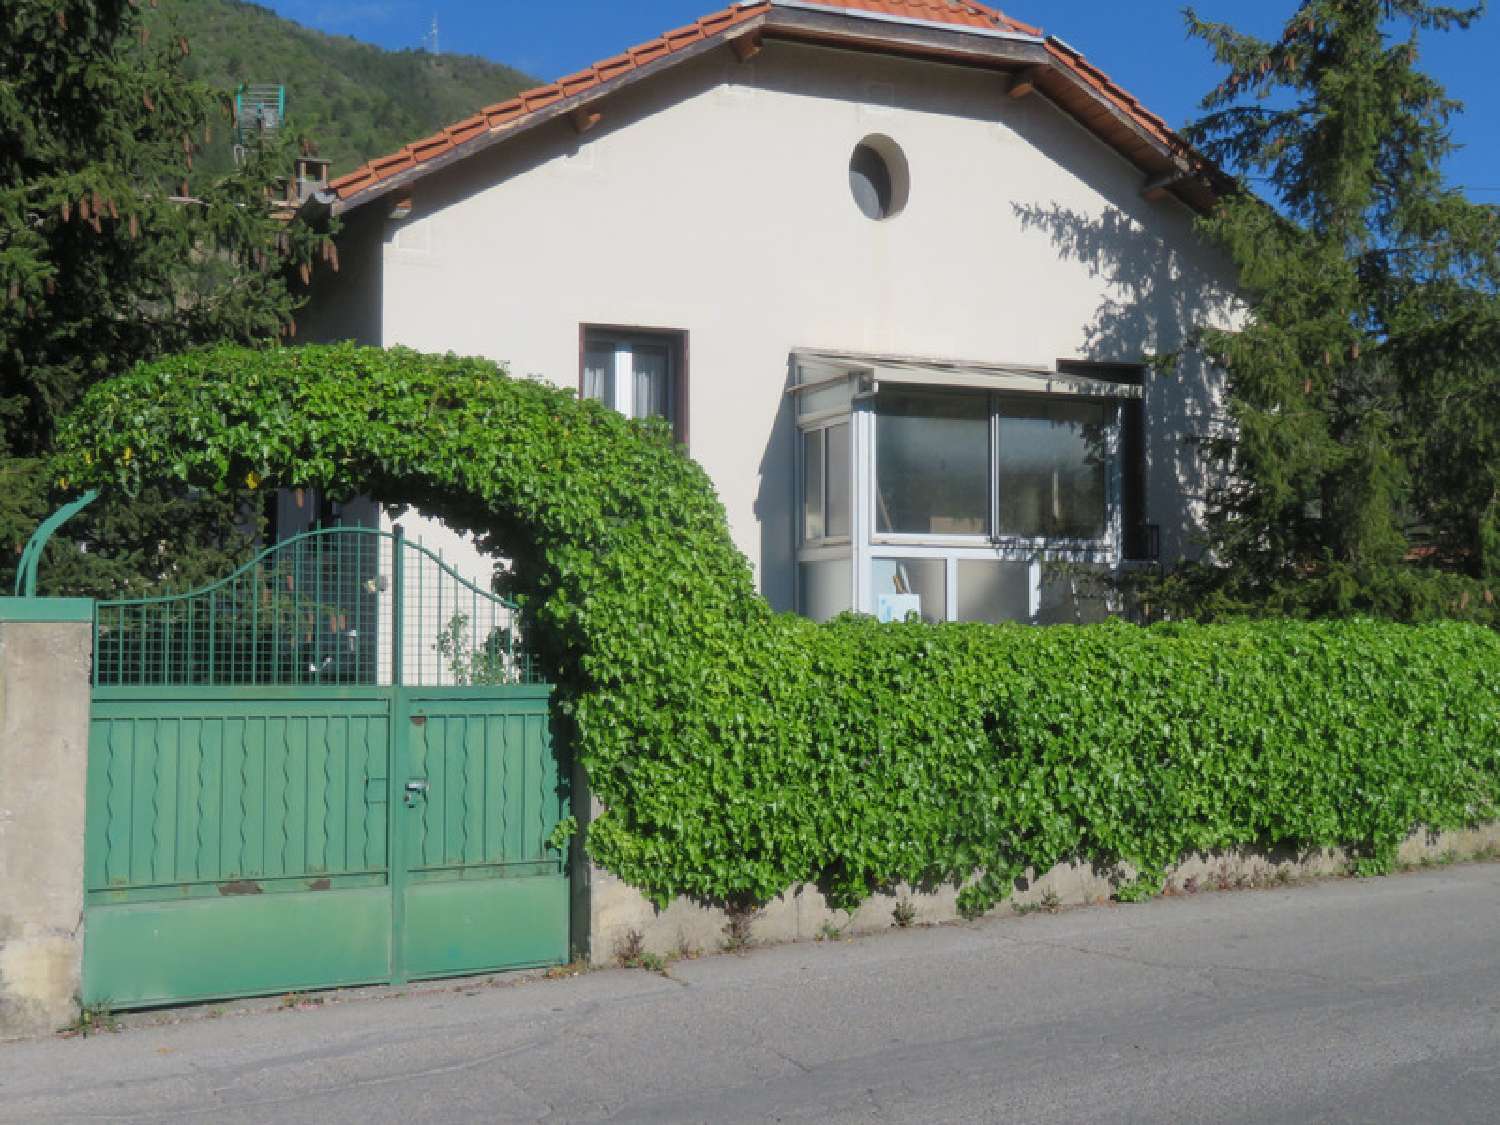  à vendre maison bourgeoise Digne-Les-Bains Alpes-de-Haute-Provence 2